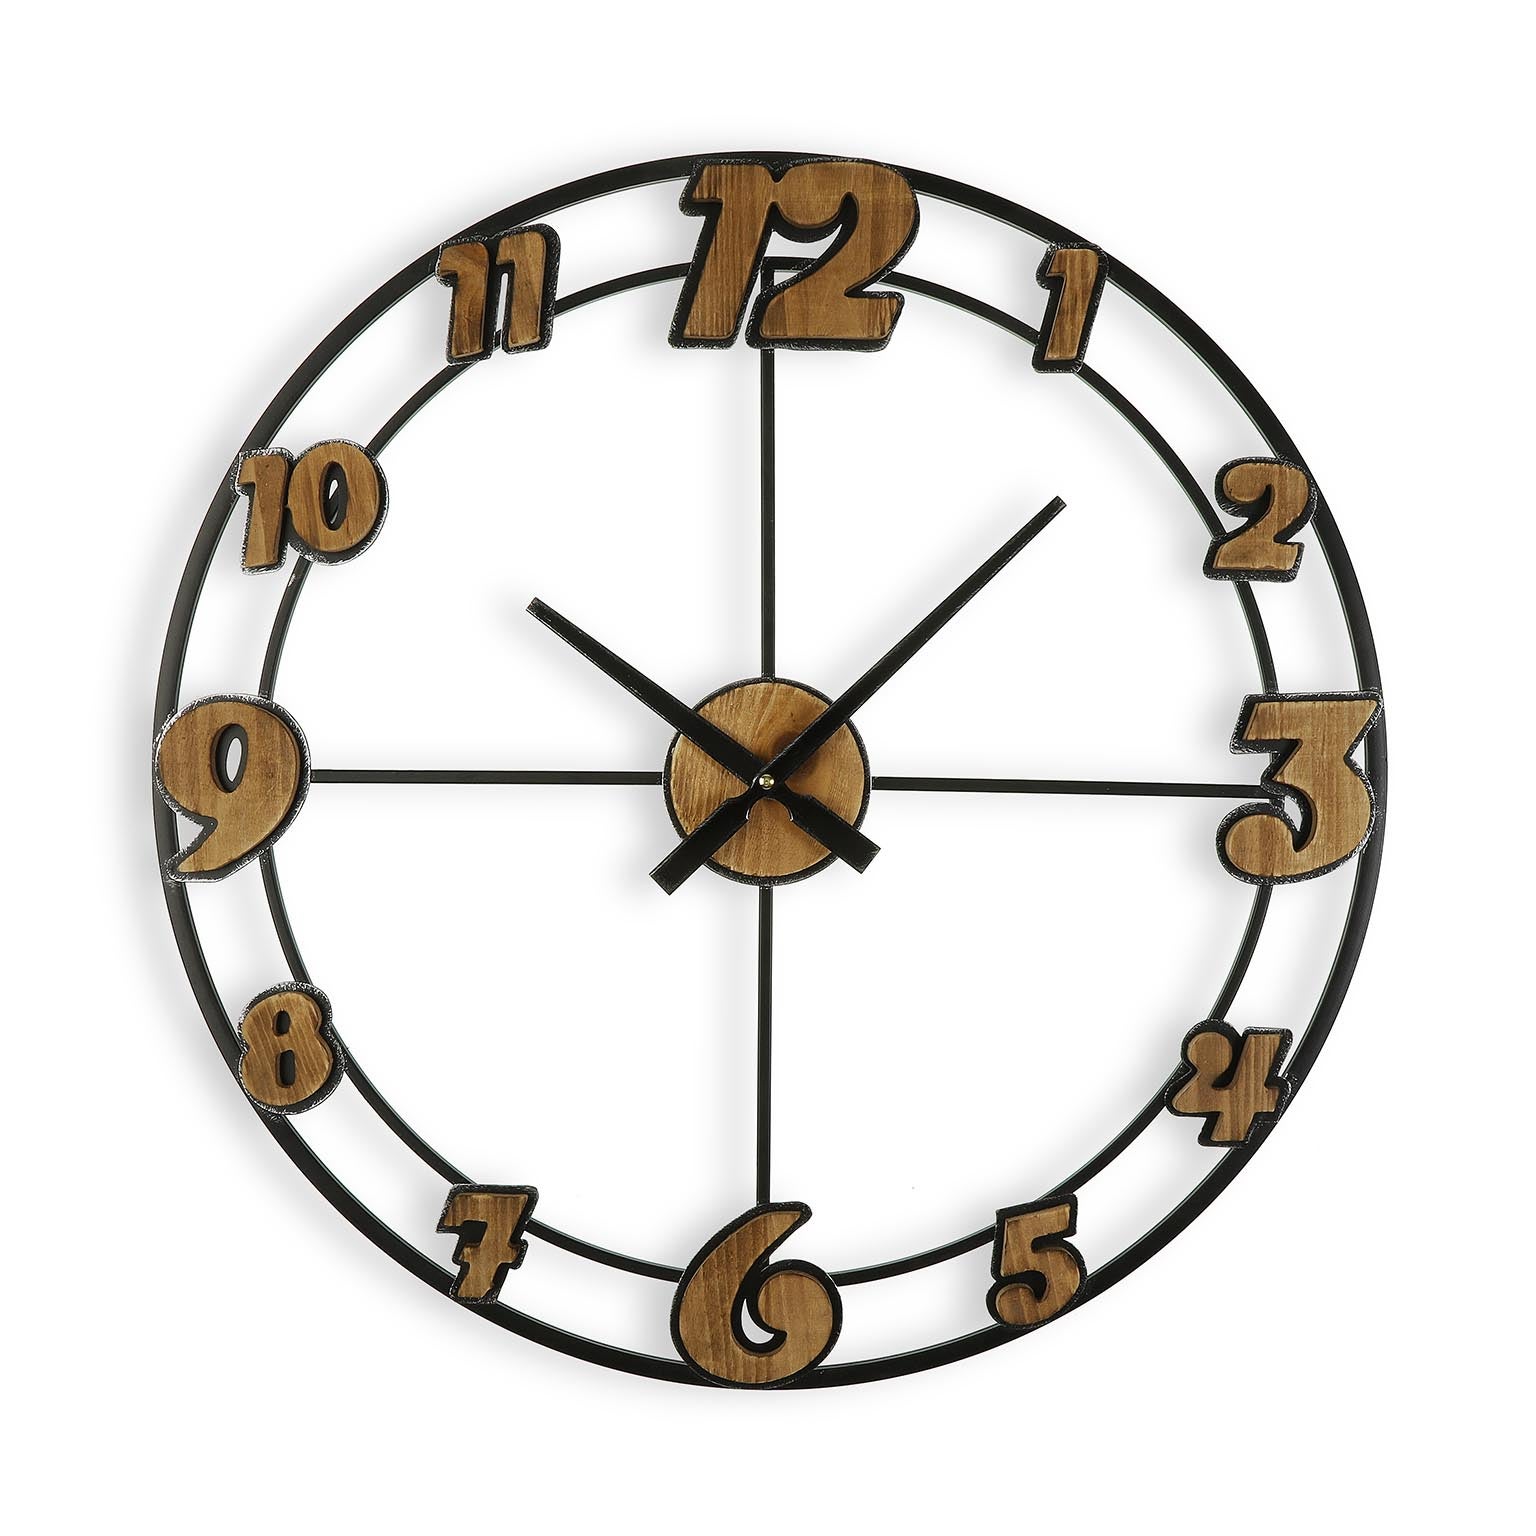 Versa hendricks reloj de pared decorativo para la cocina, el salón, el comedor o la habitación, marrón y negro, 60x4,5x60cm